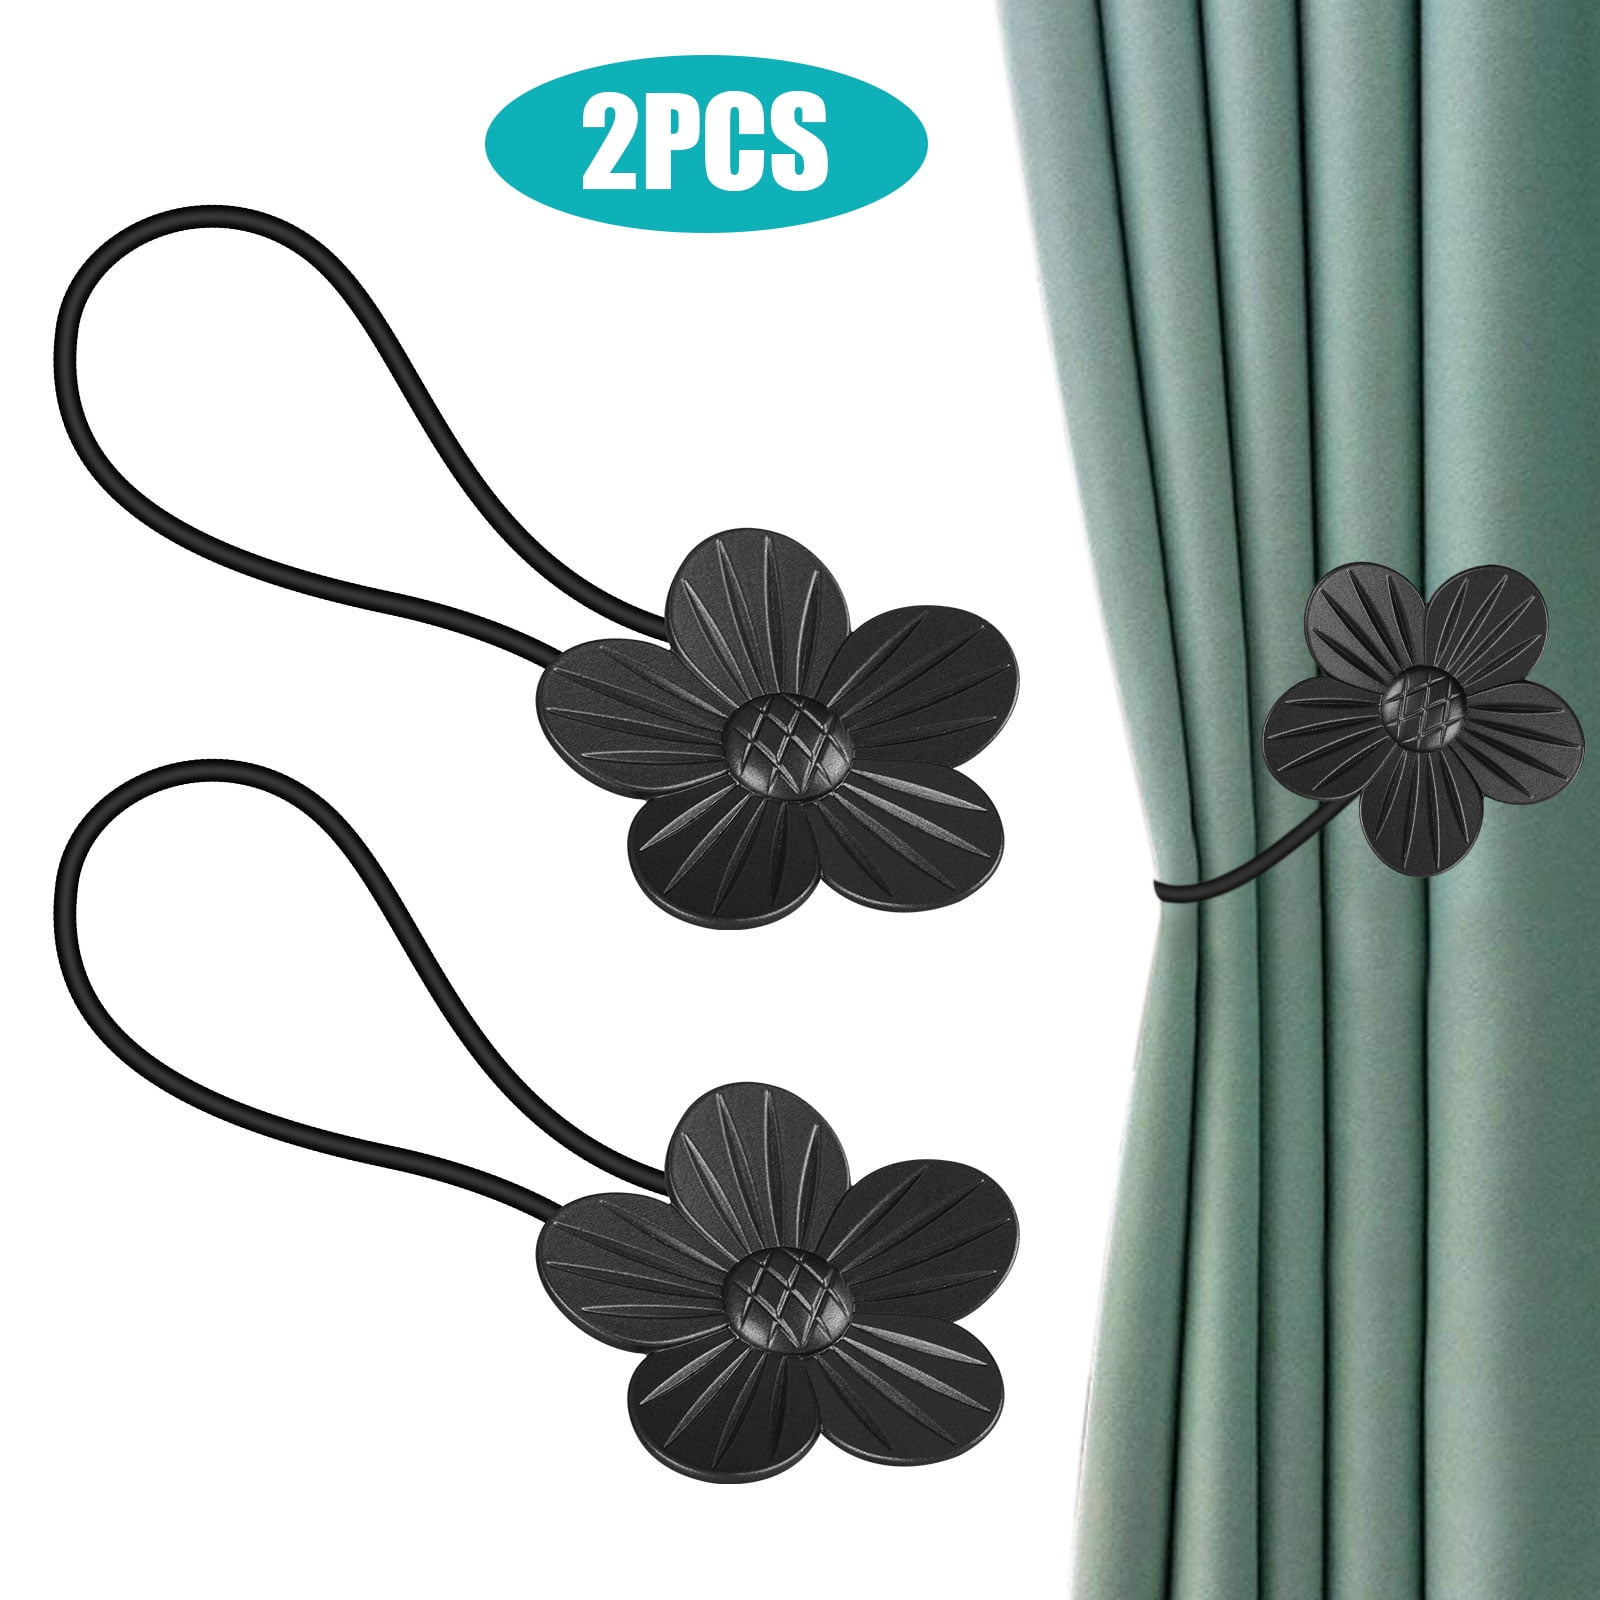 2Pcs Flower Design Curtain Tiebacks Door Wall Hanger Holdbacks Holder Silve 